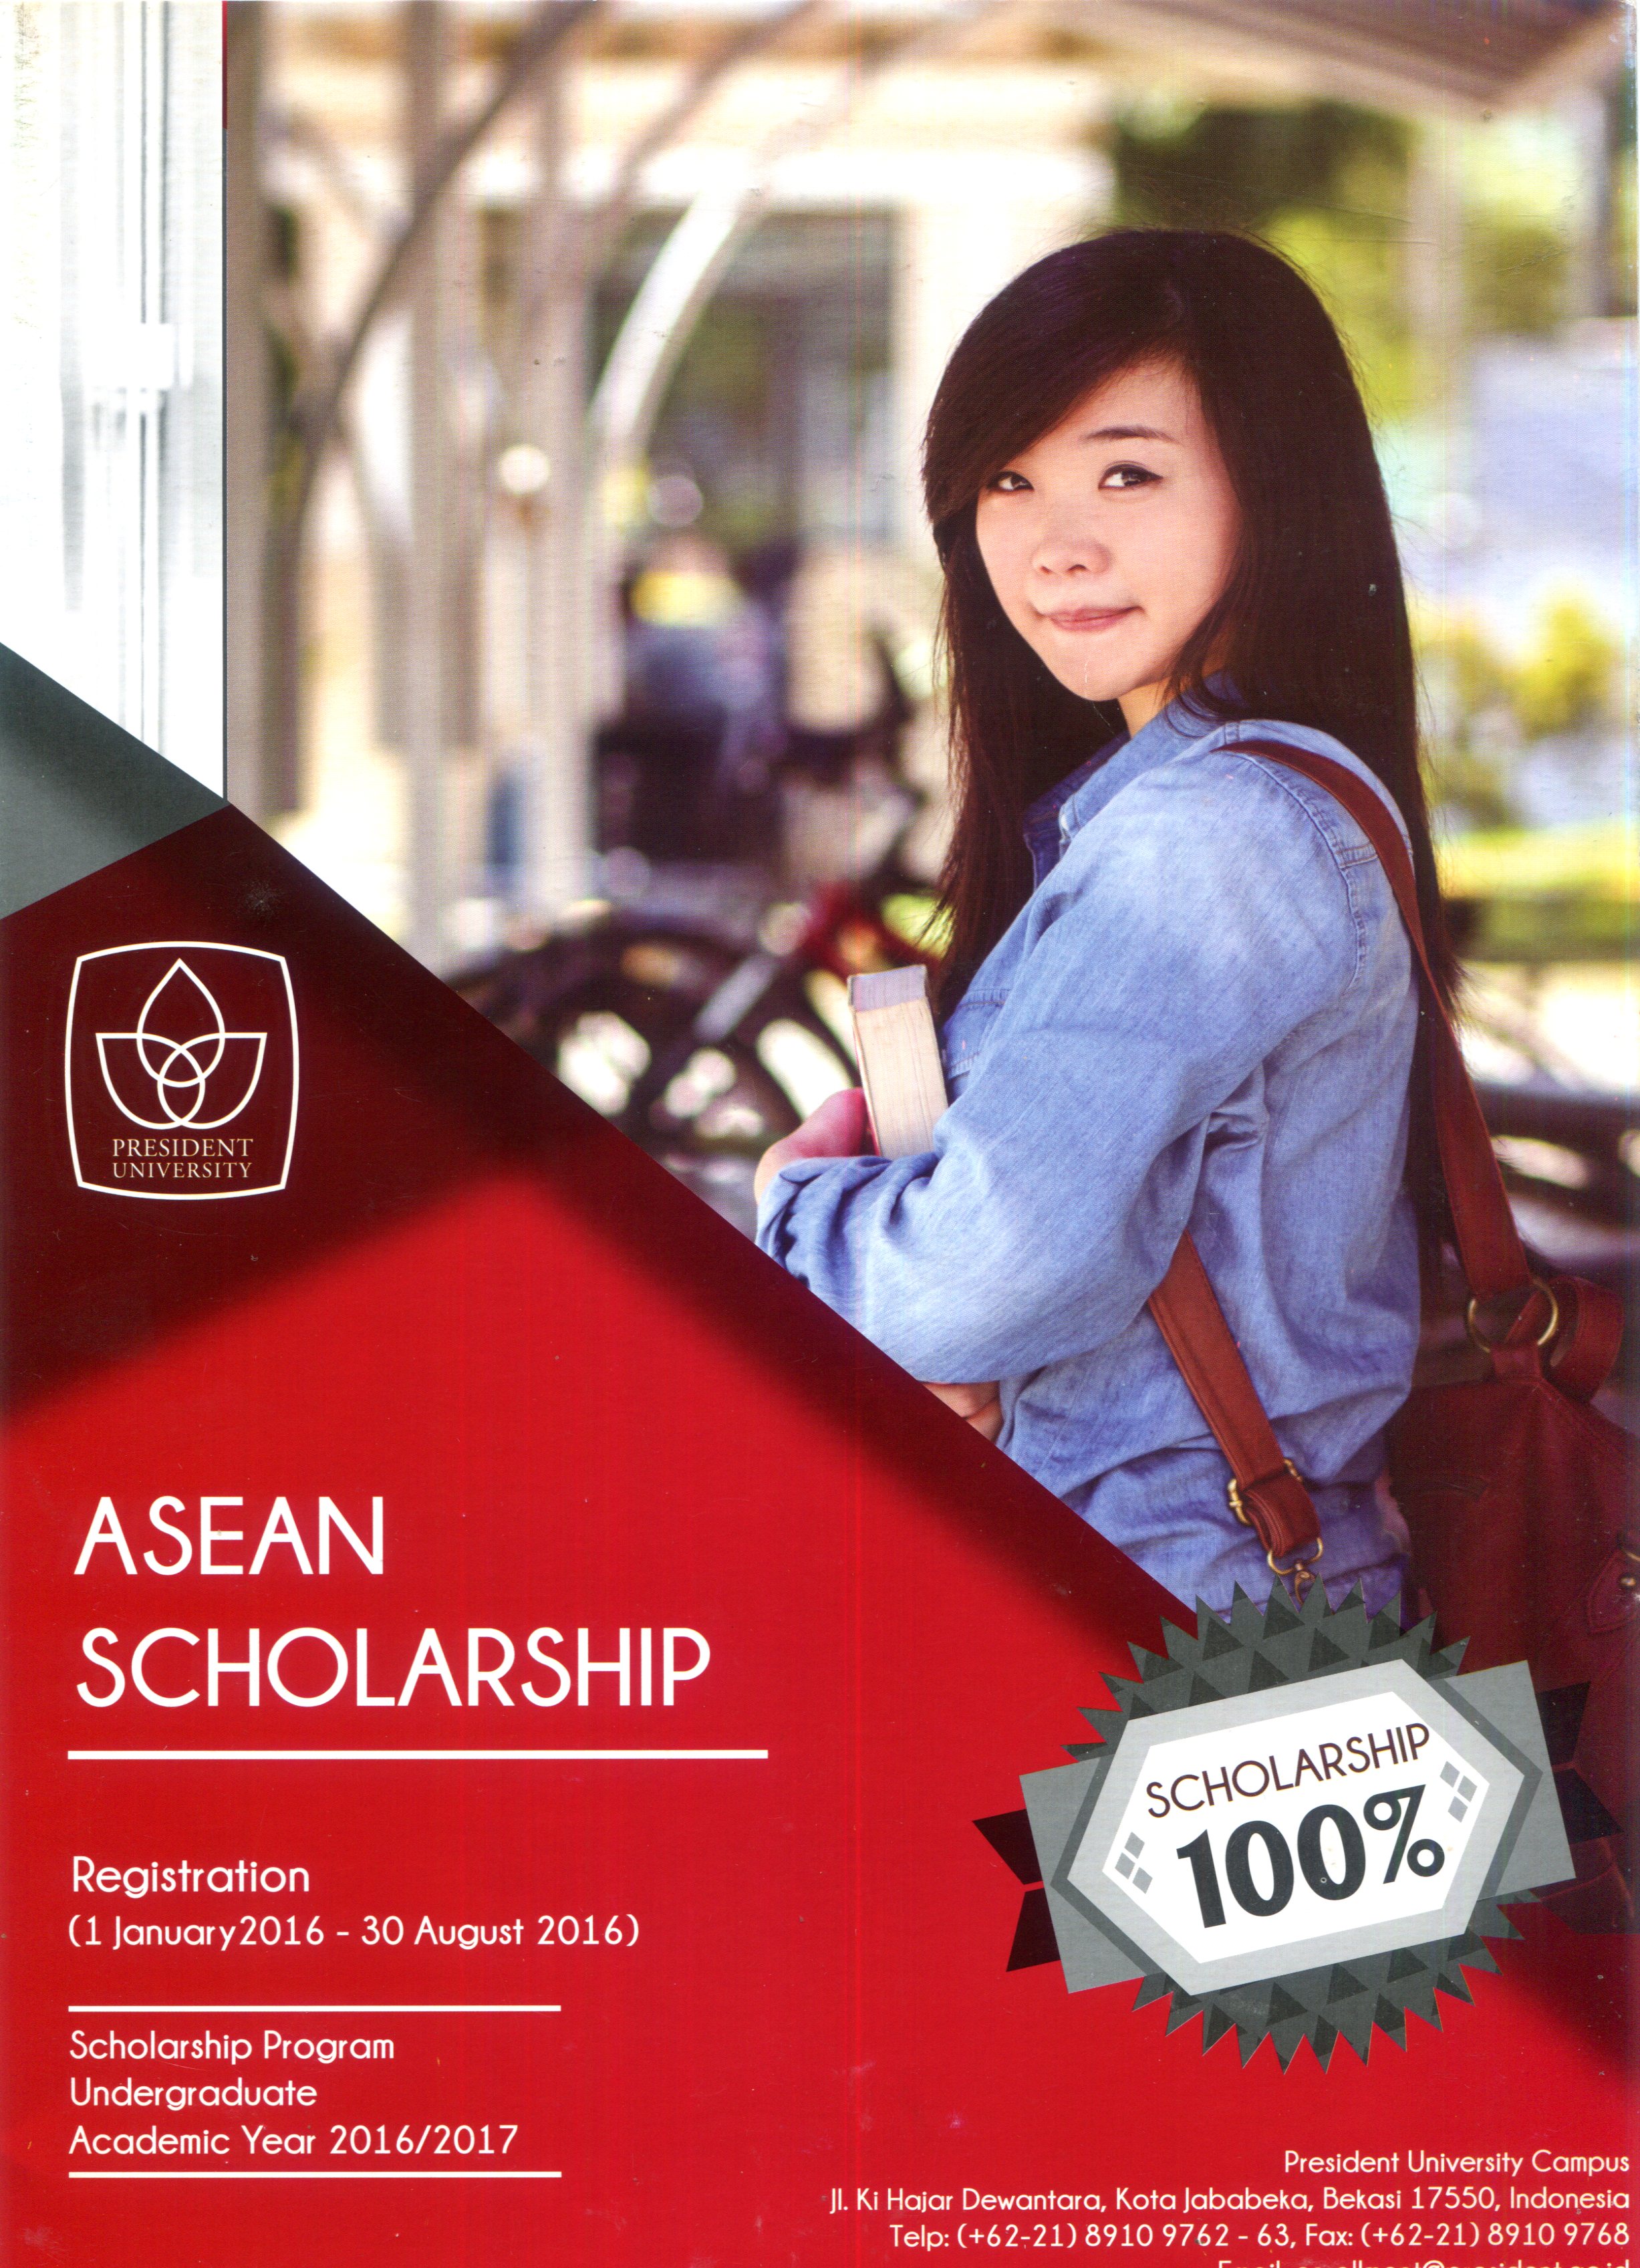 Trường Đại học Presdent cung cấp học bổng 100% học phí cho HSSV khu vực Đông Nam Á (hạn cuối 30/8/2016)